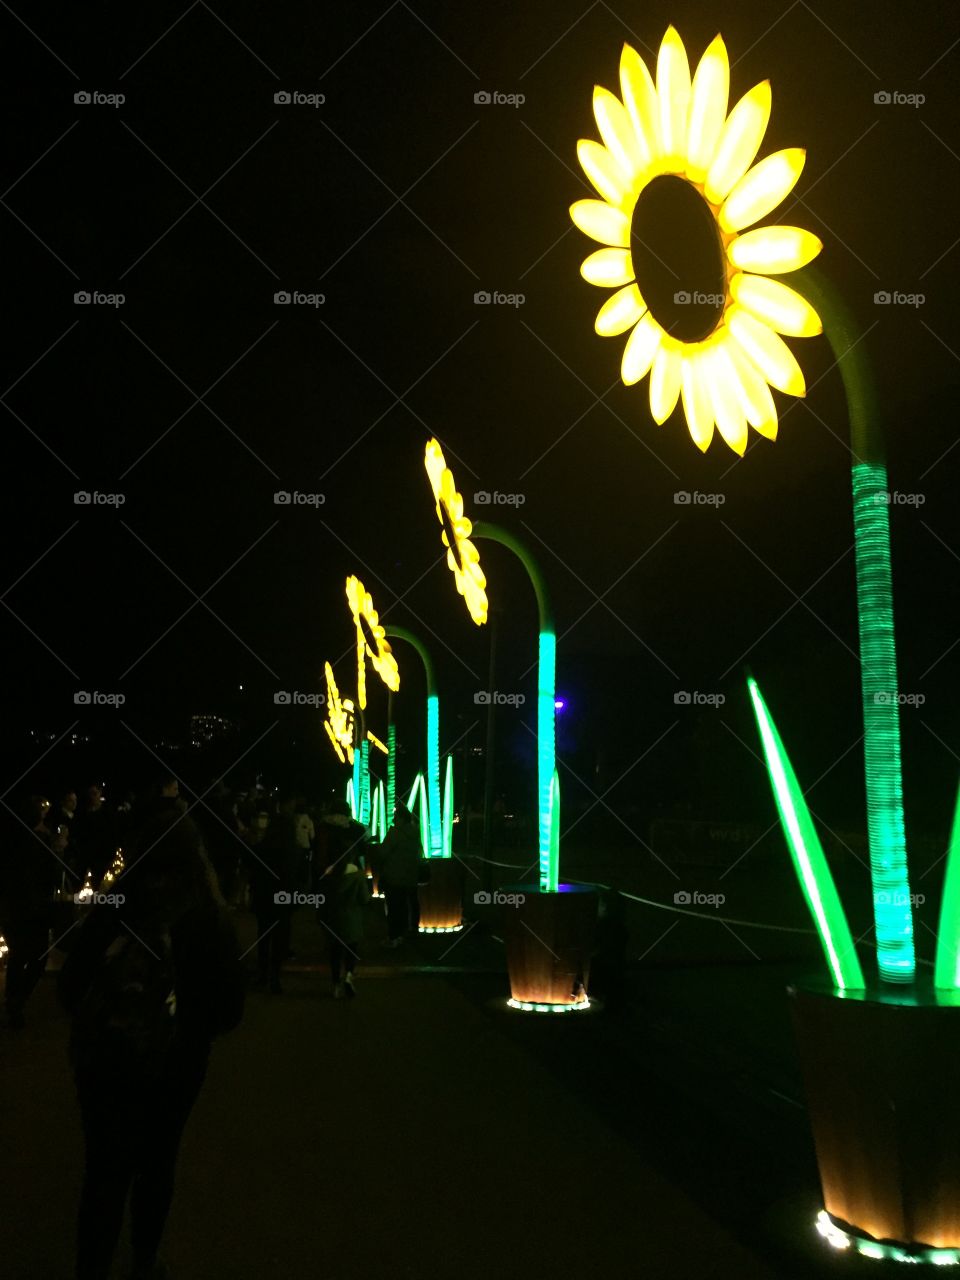 Neon sunflower 